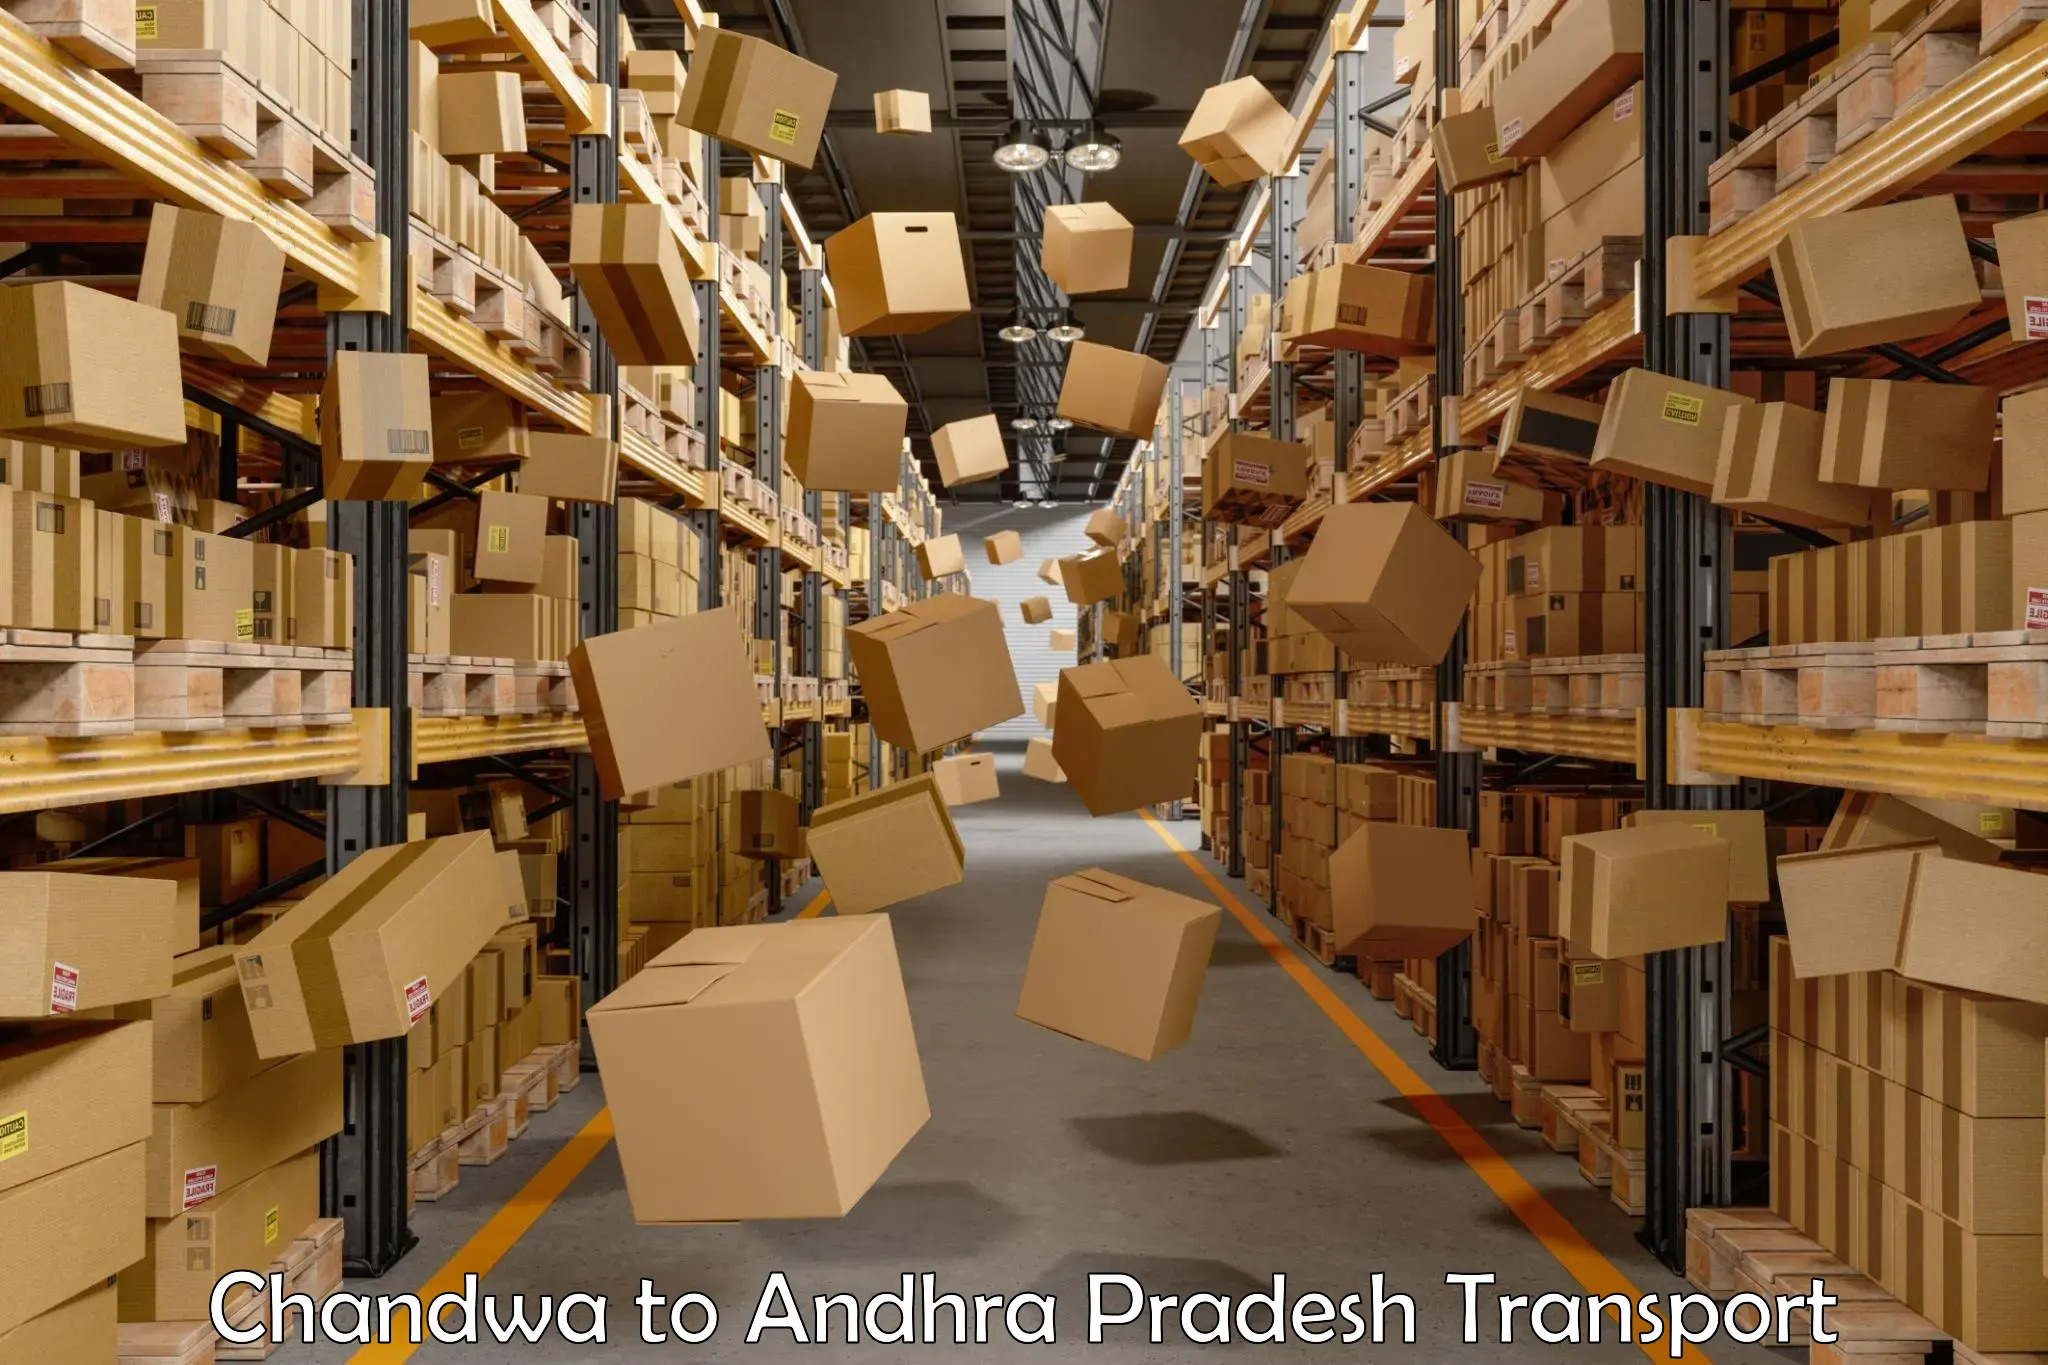 Land transport services Chandwa to Pedapadu